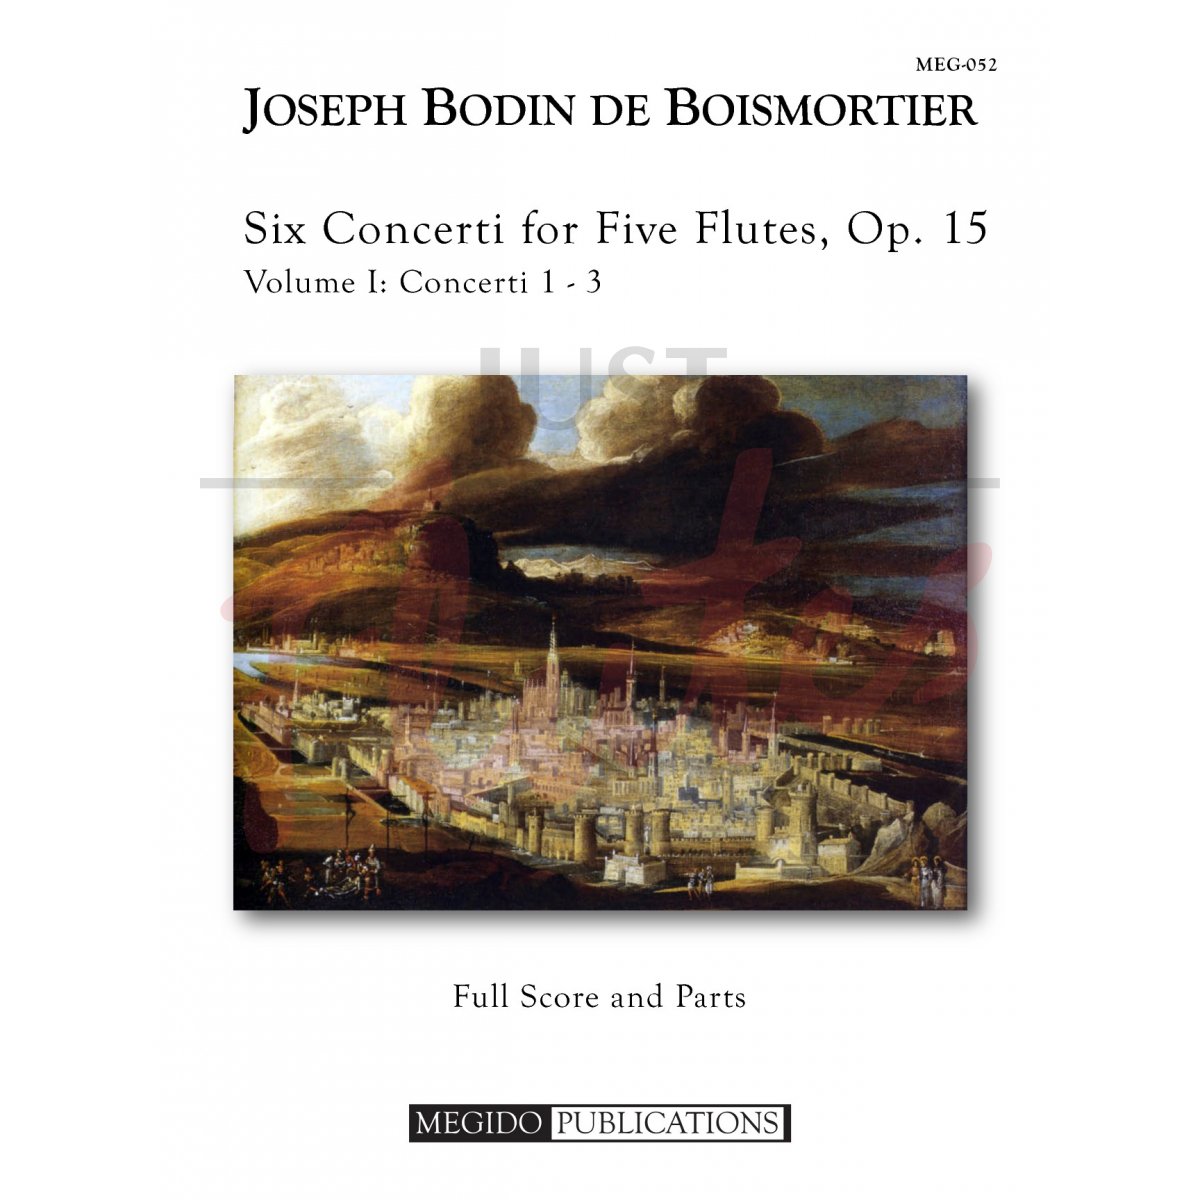 Six Concerti for Flute Flutes, Op. 15, Volume I